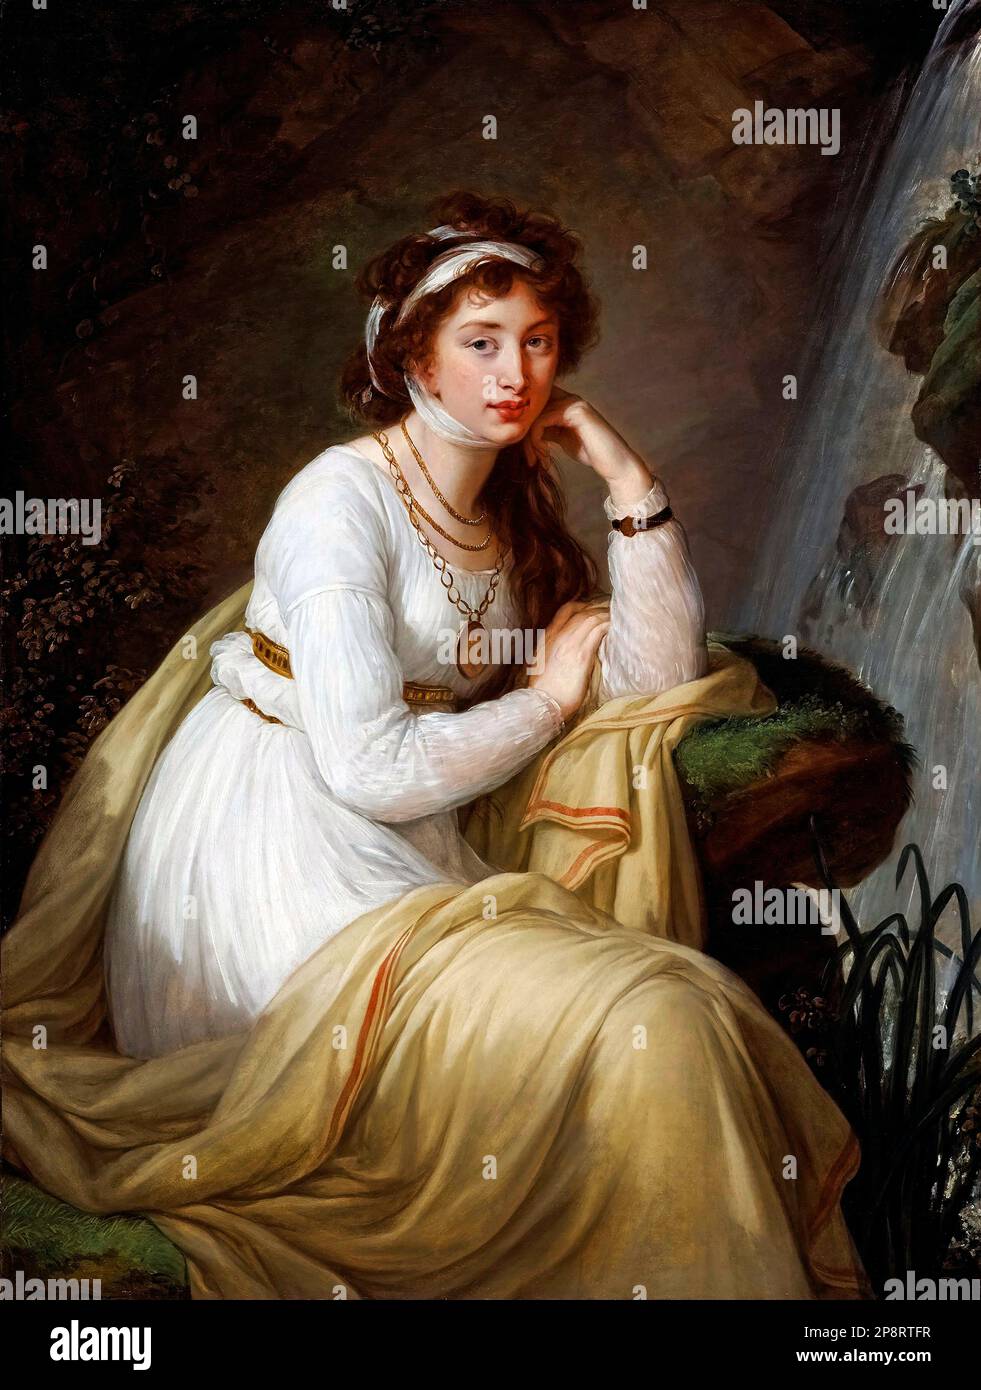 Comtesse Anna Ivanovna Tolstaya (1774-1825) par Élisabeth Vigée le Brun (1755-1842), huile sur toile, 1796 Banque D'Images